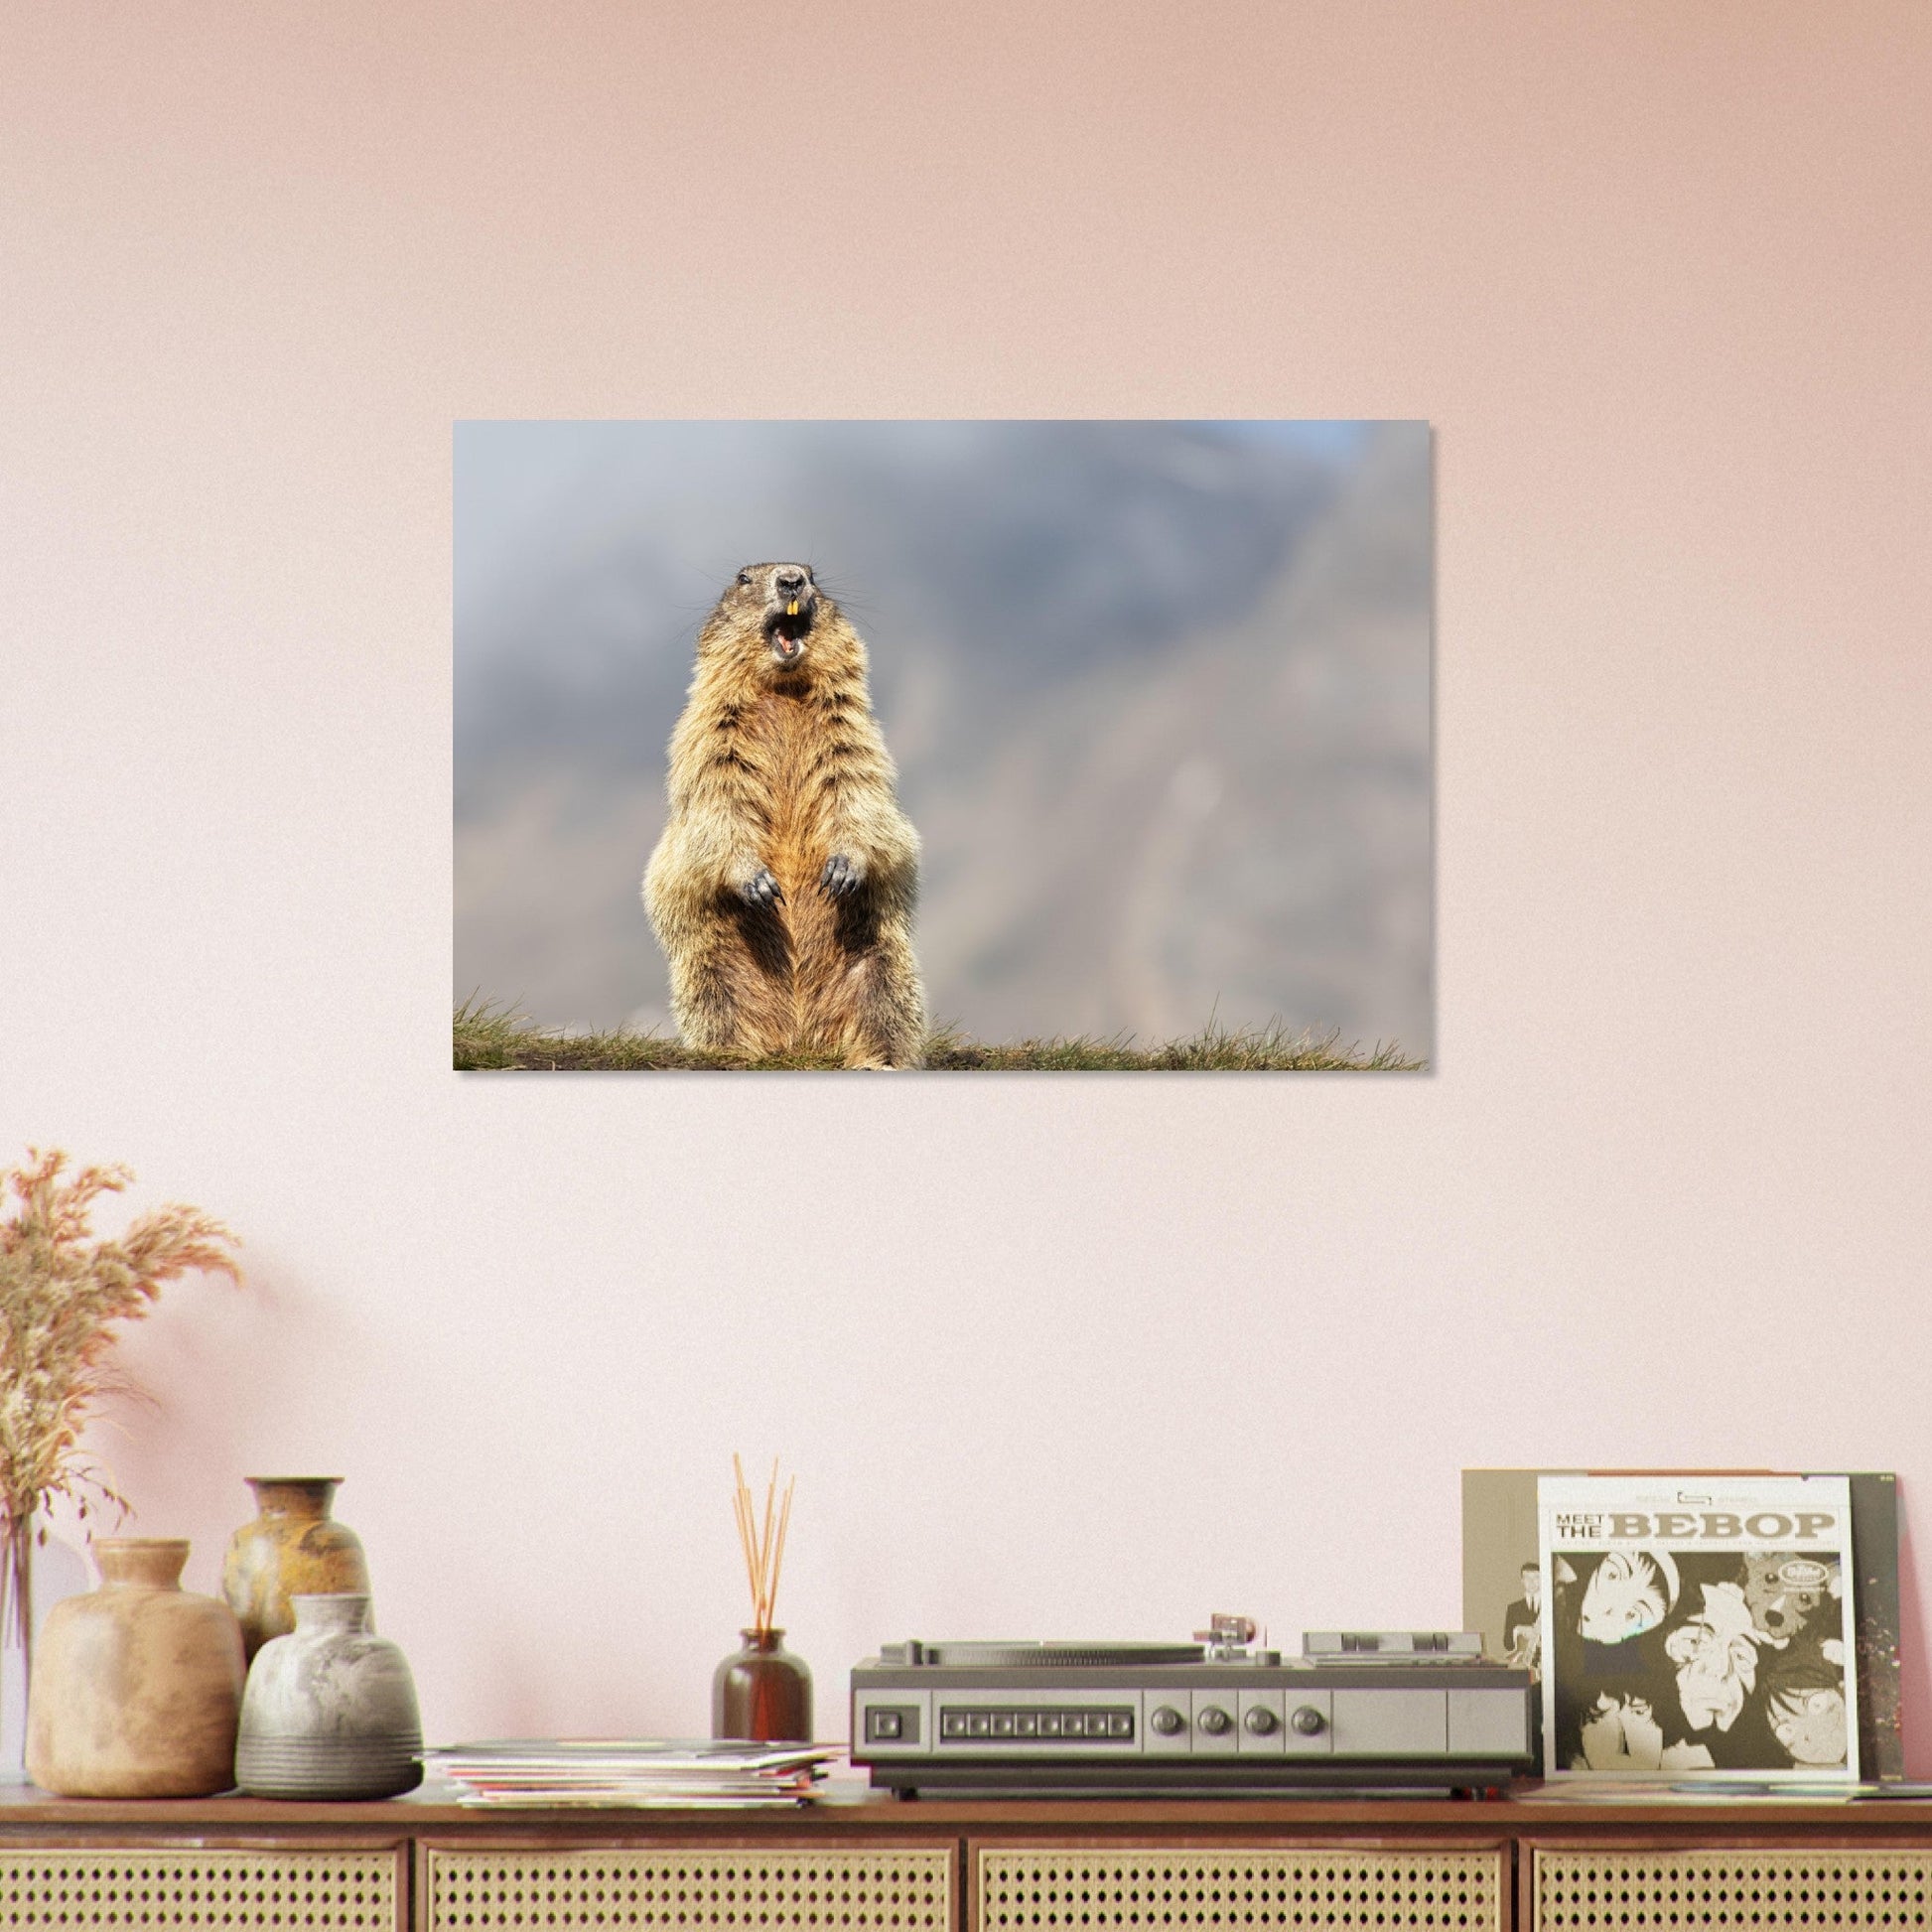 Vente Photo d'une marmotte dans les Alpes #10 - Tableau photo paysage